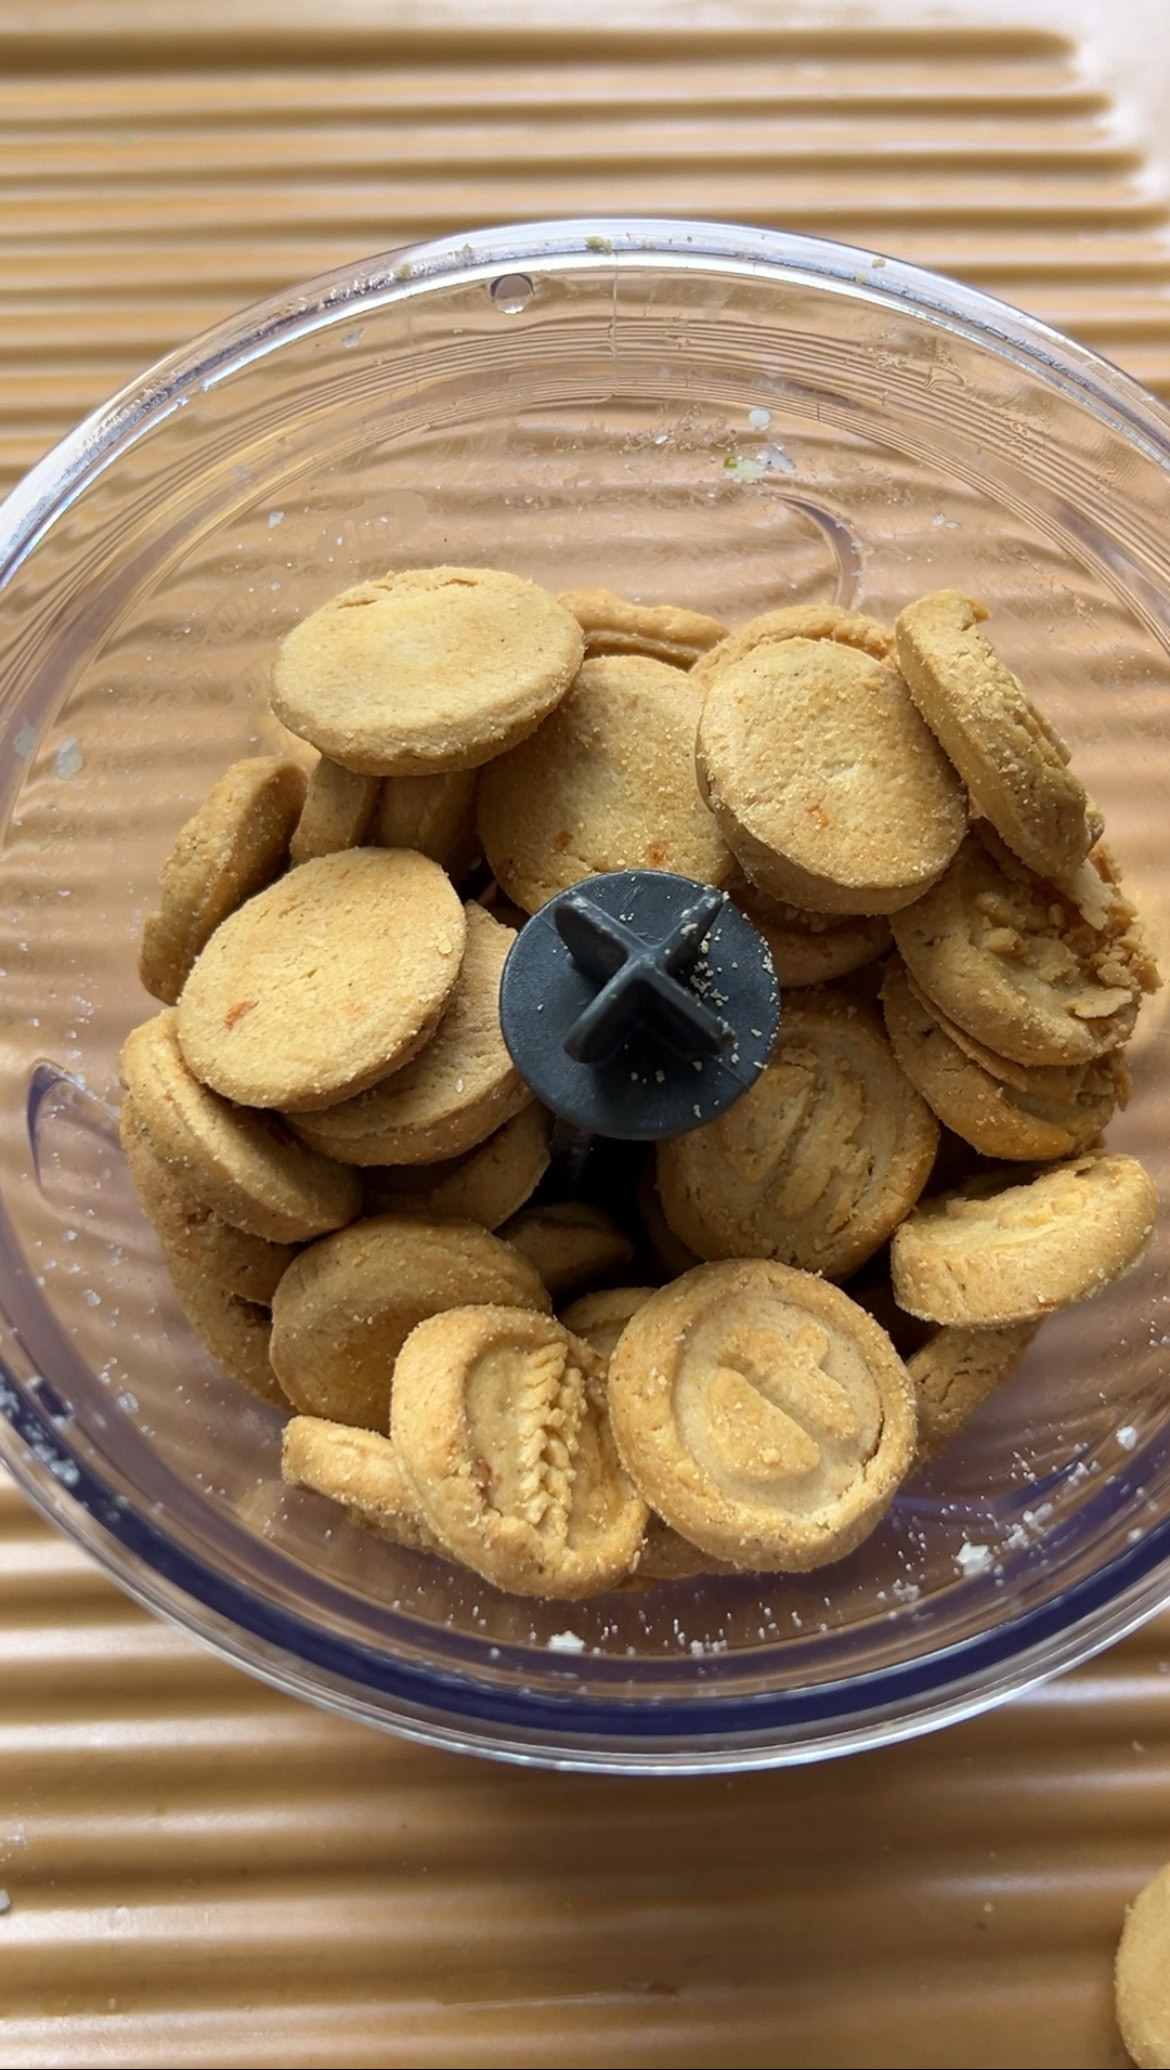 Savory cookies in a blender.